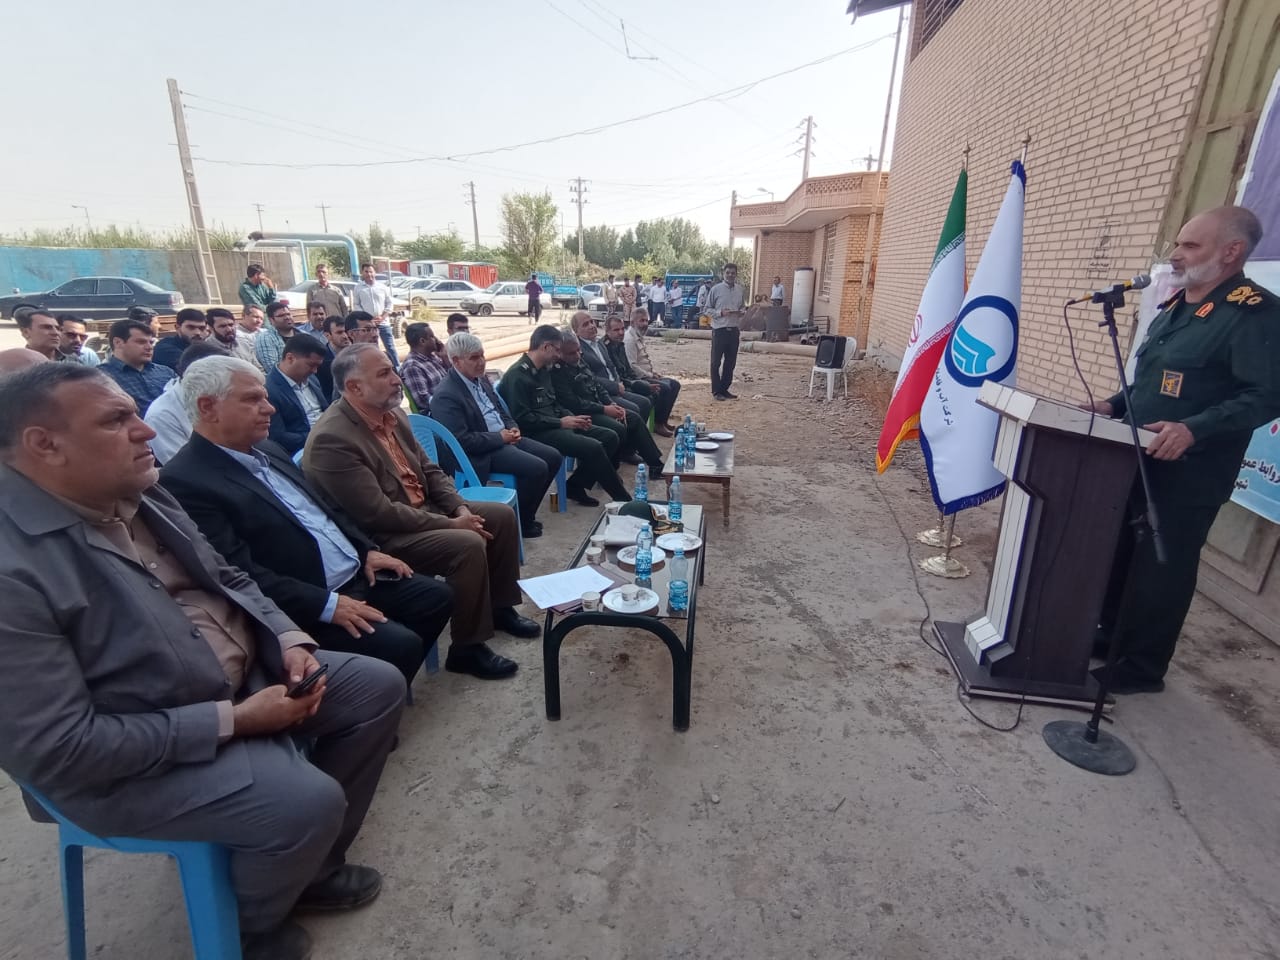 آئین کلنگ زنی پروژه آبرسانی به 22 روستاهای رامشیر باحضور حاج ابراهیم متینیان، مدیرعامل شرکت آب و فاضلاب خوزستان و فرمانده قرارگاه کربلا